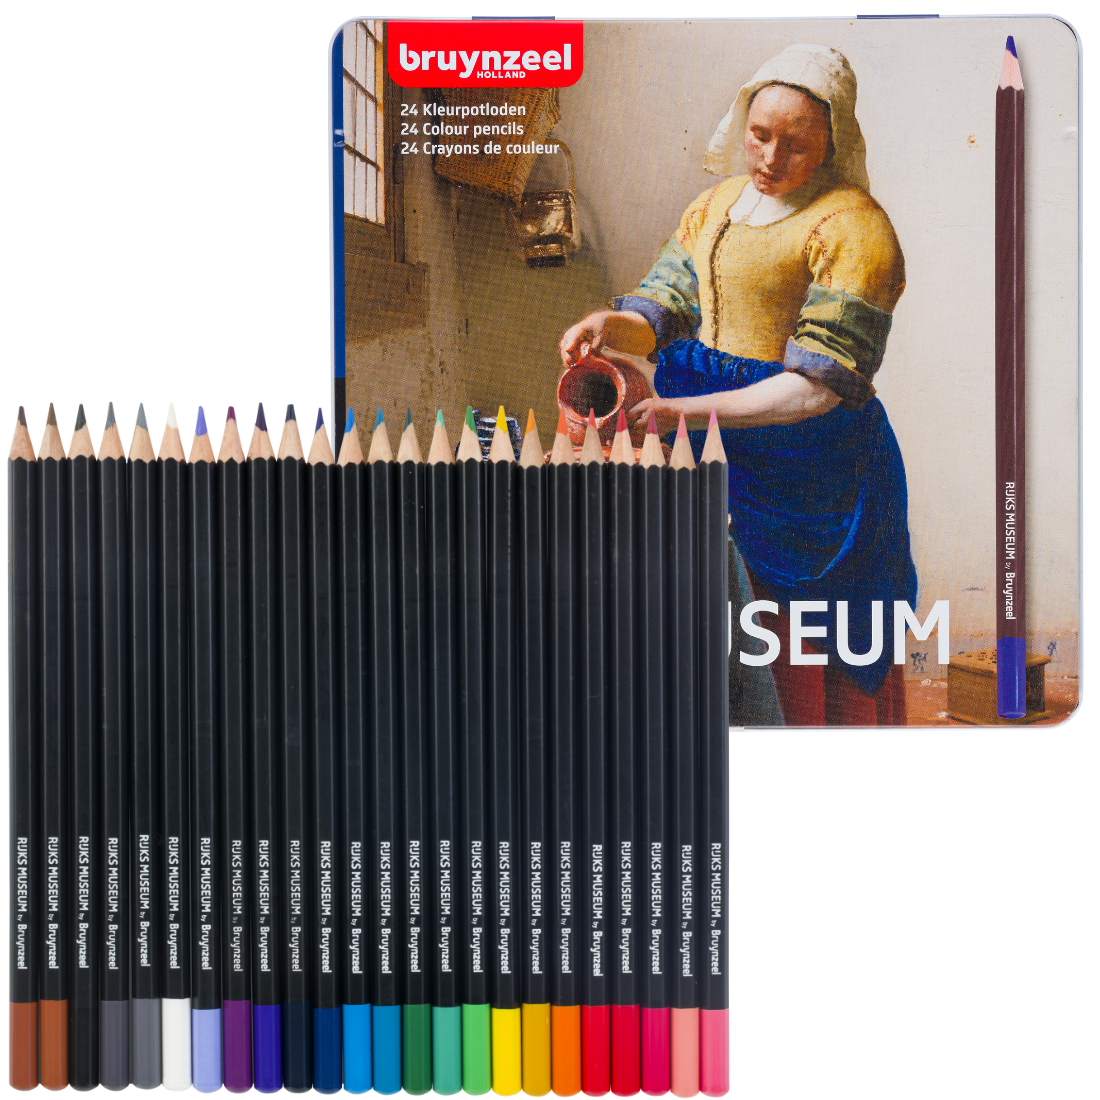 Conjunto de lápis de cor com imagem de A leiteira de Verneer com 24 unidades da Bruynzeel.